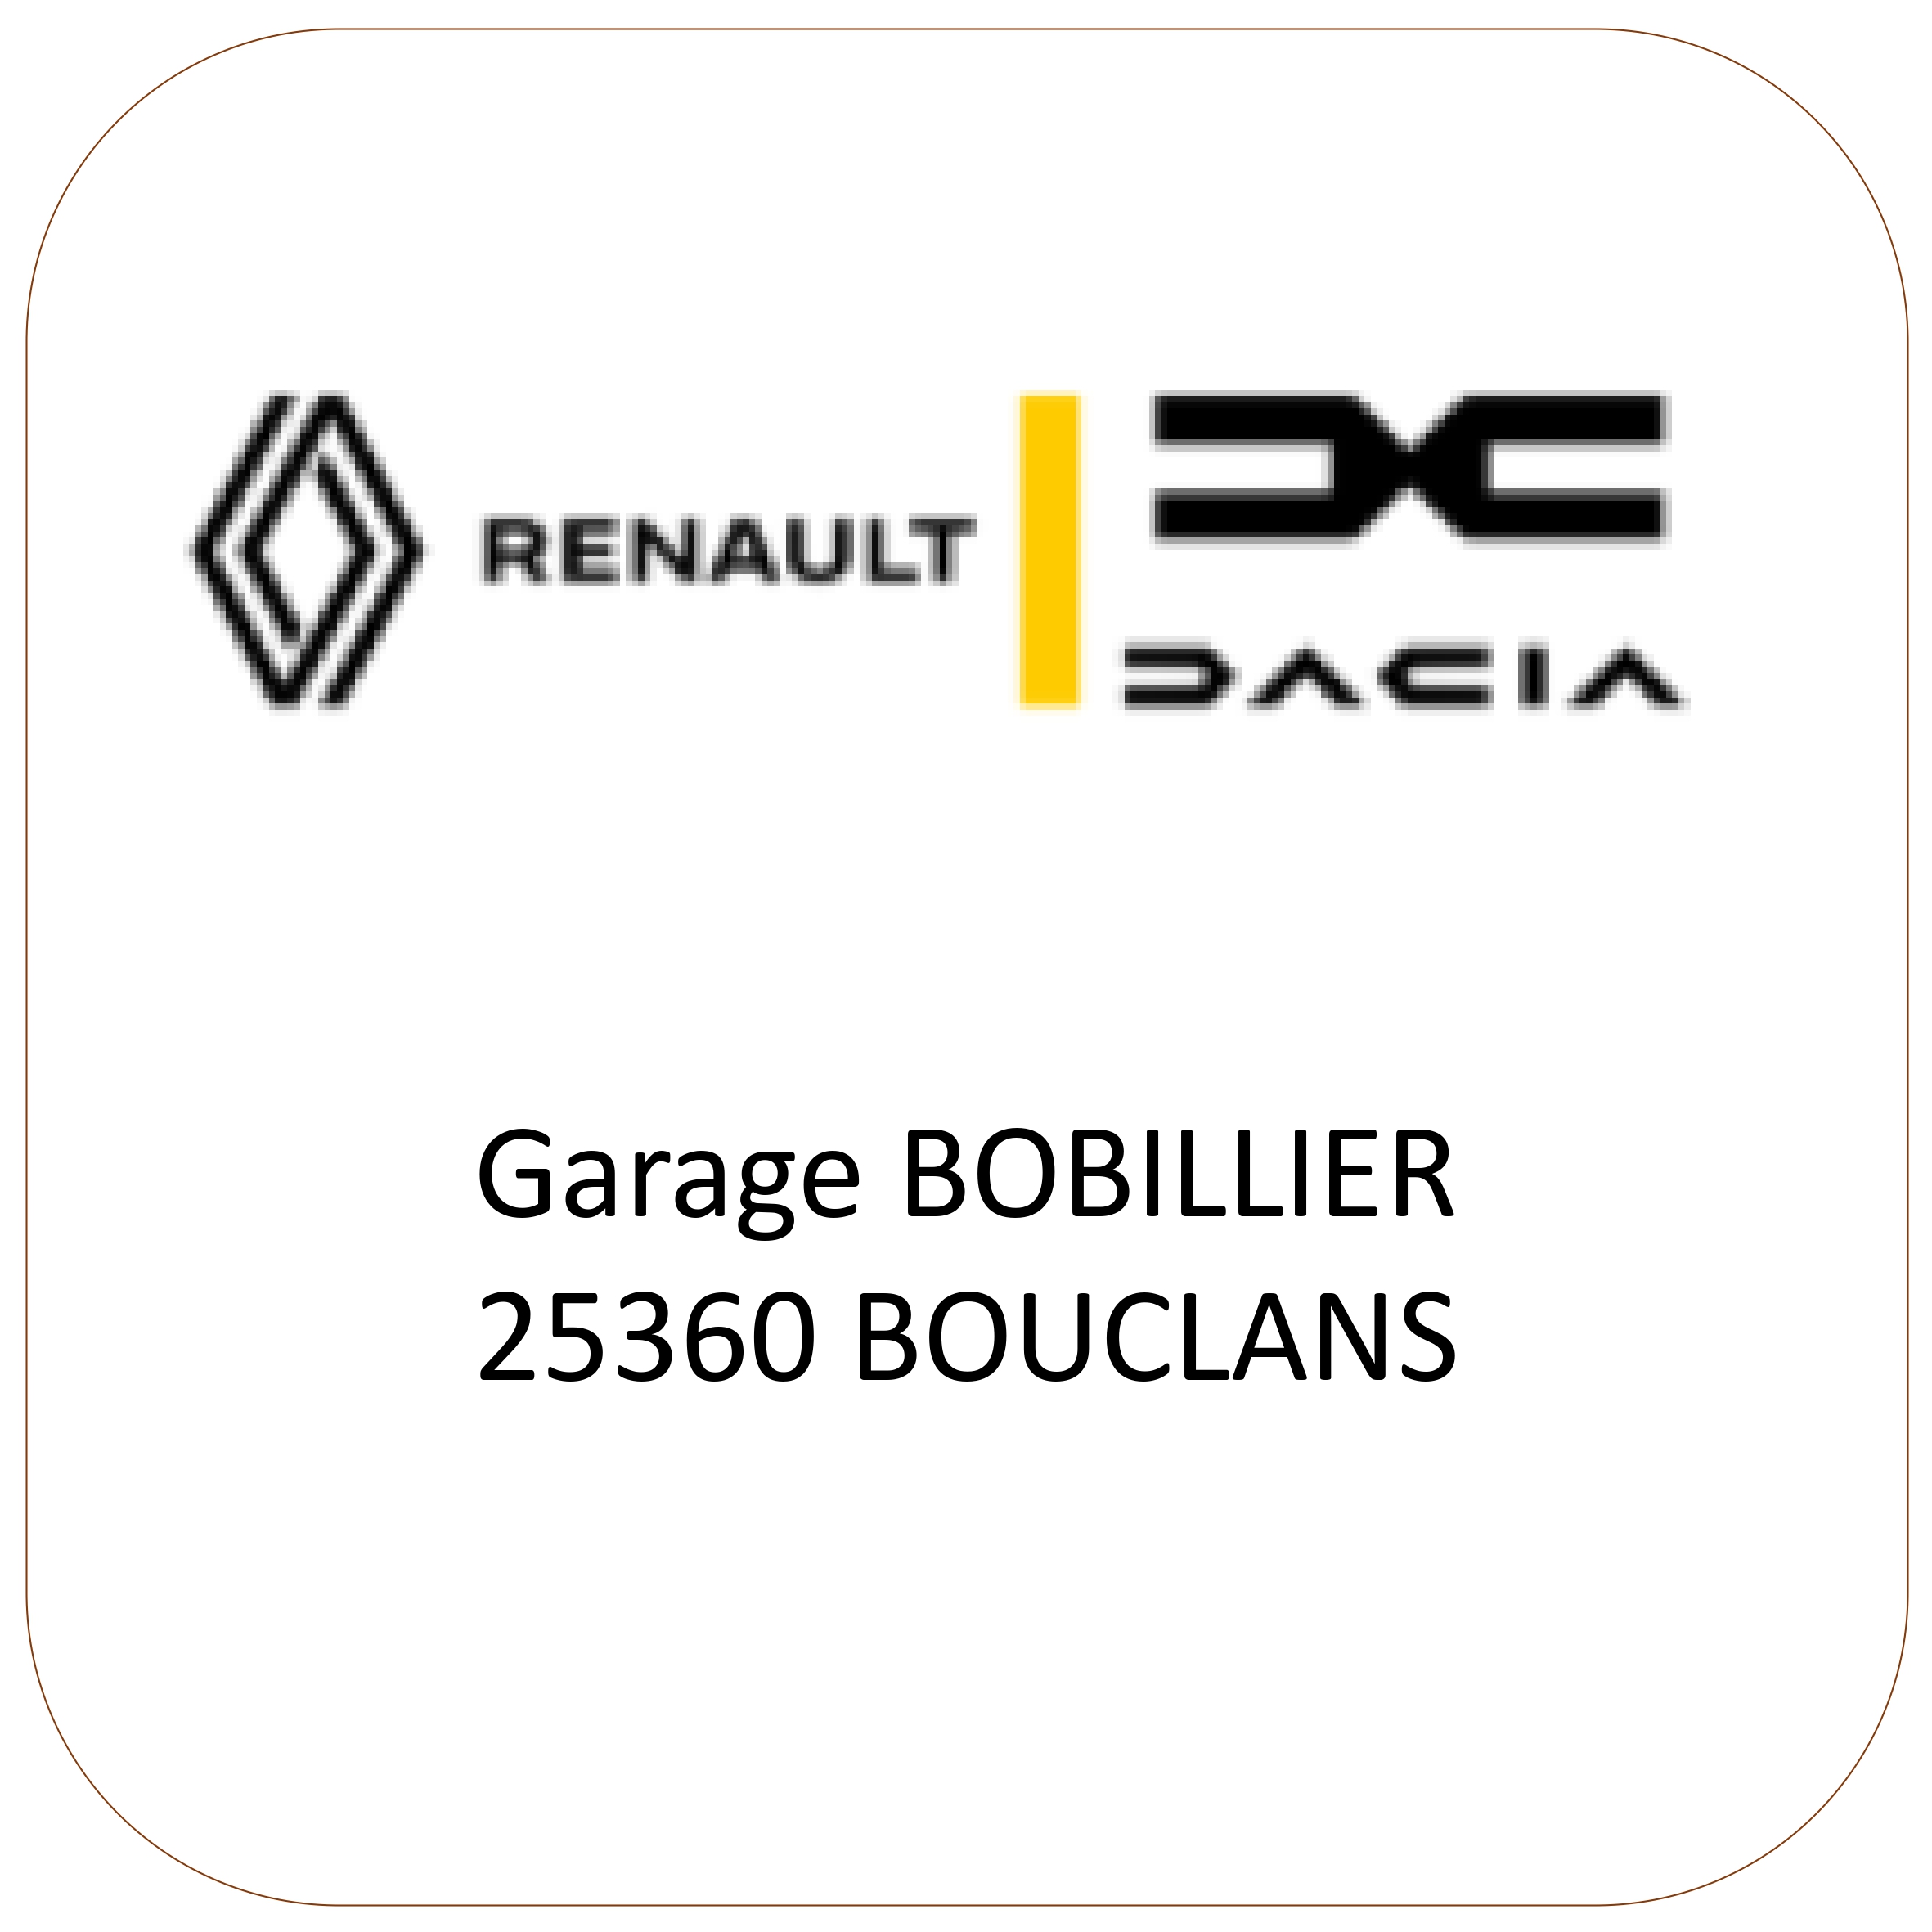 Garage Bobillier_page-0001.jpg